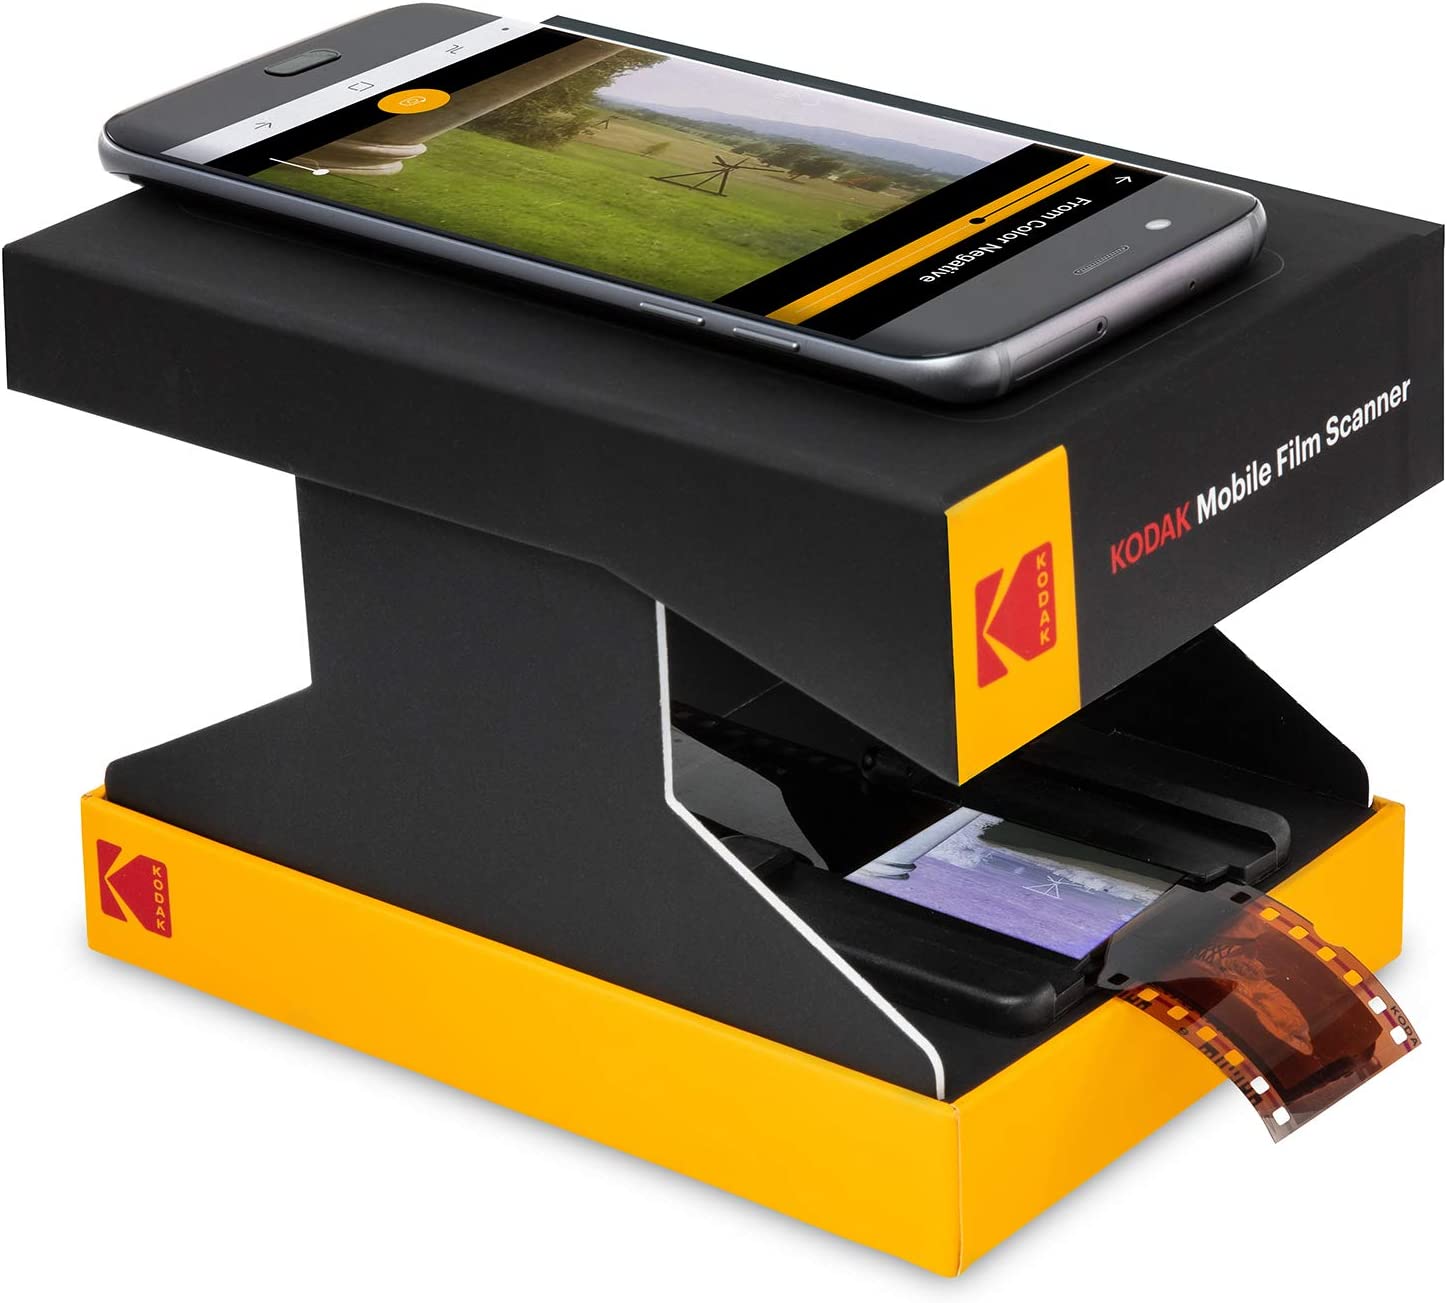 Film scanner for smartphones